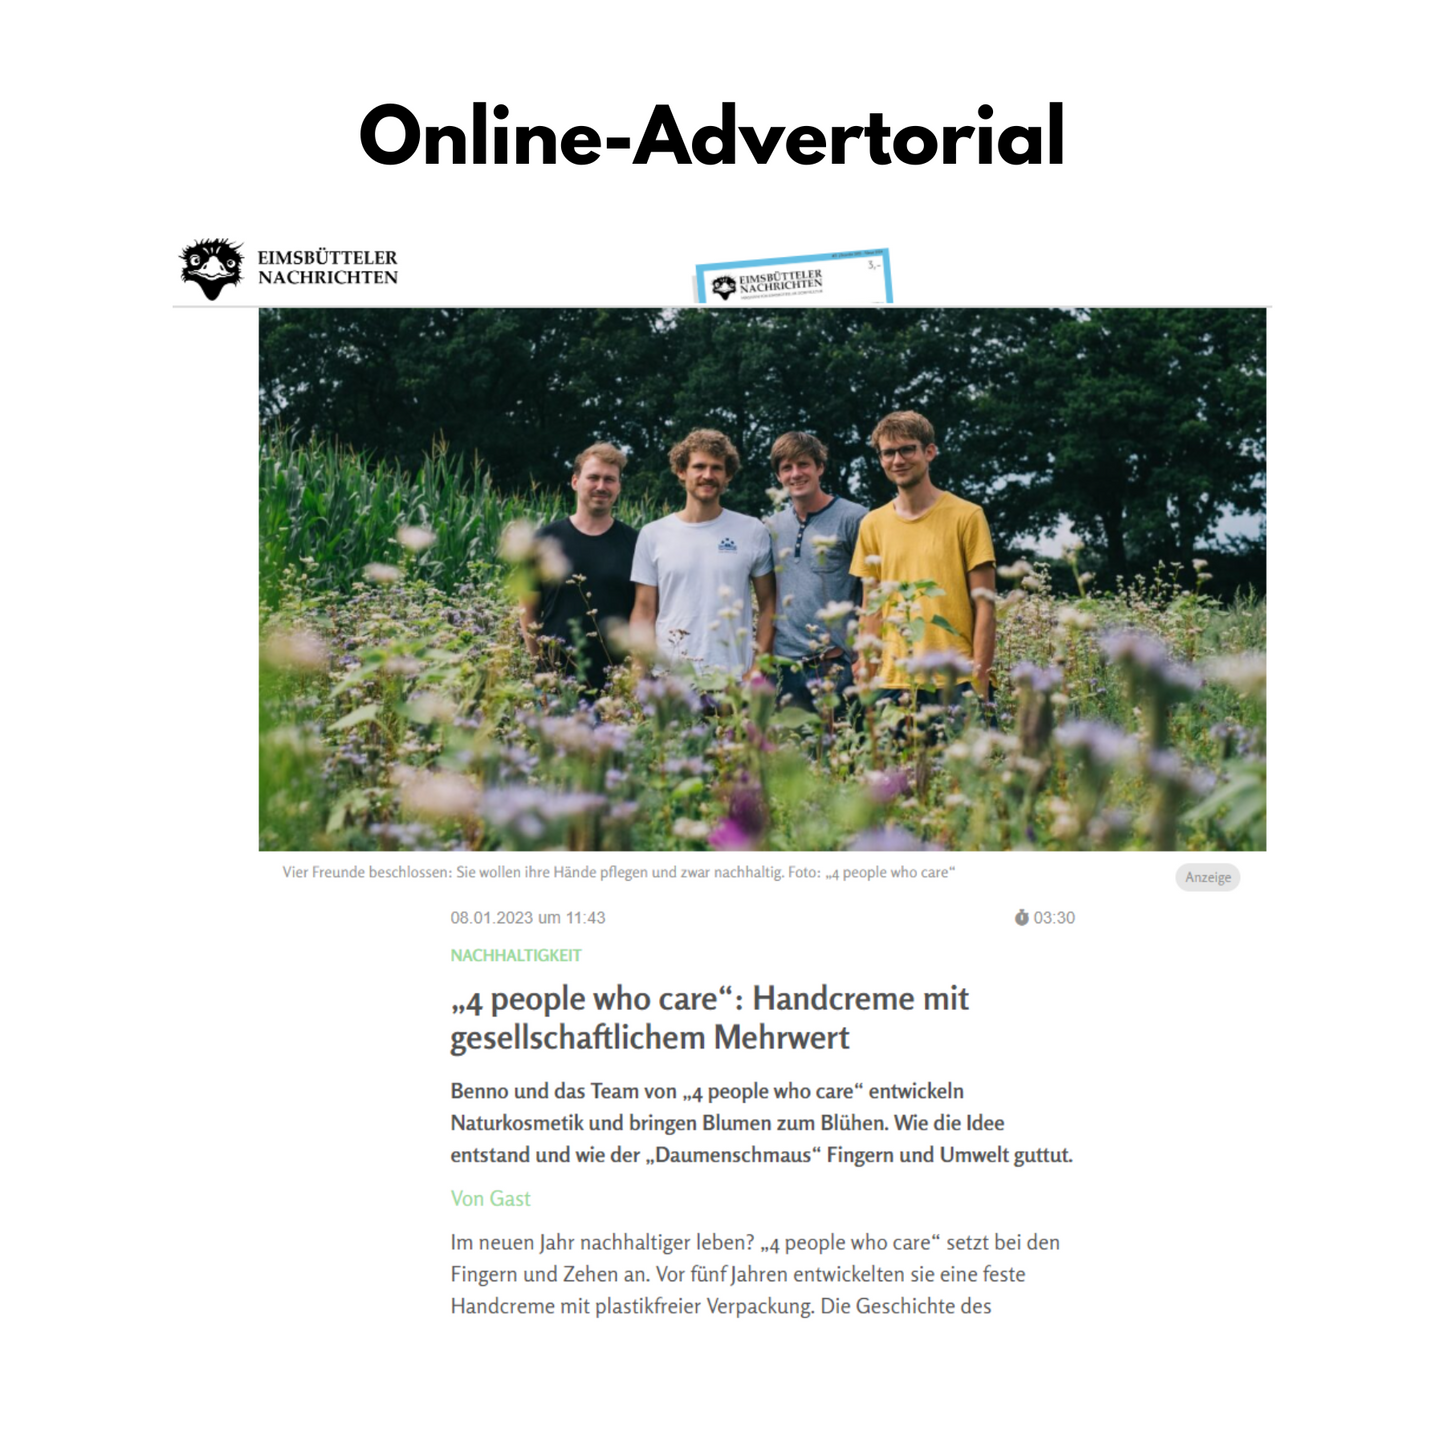 Print-Online-Advertorial